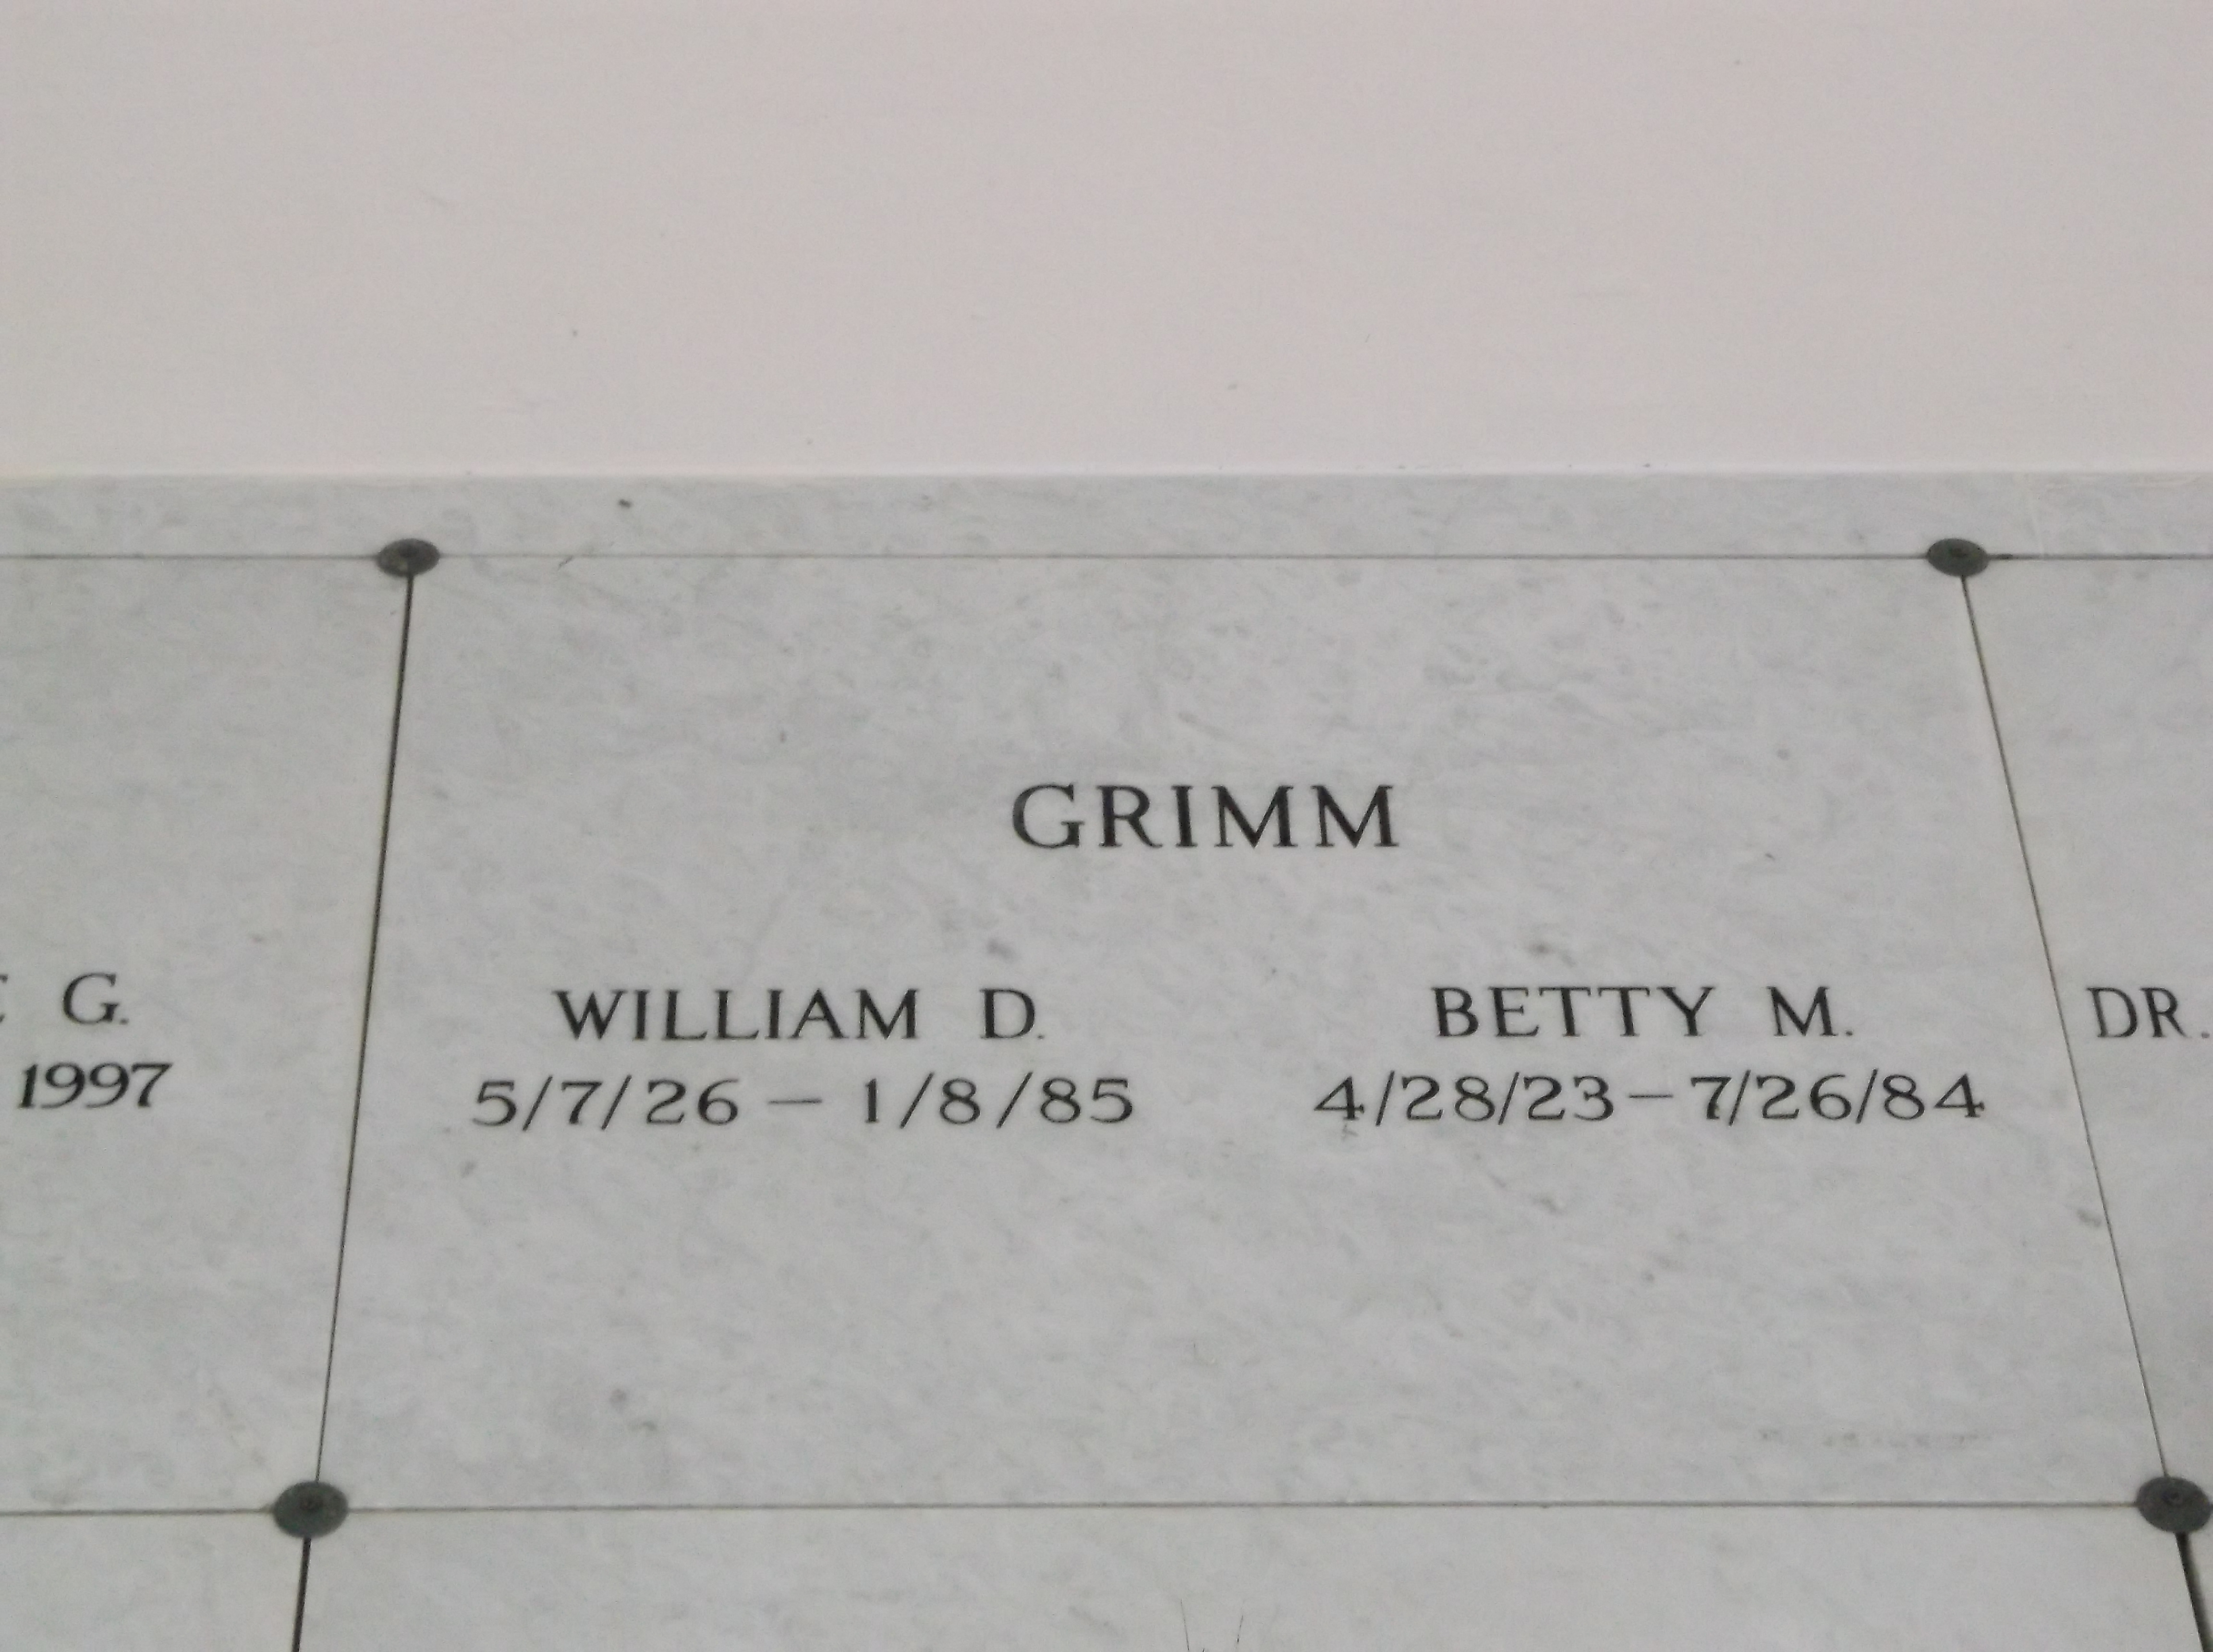 William D Grimm